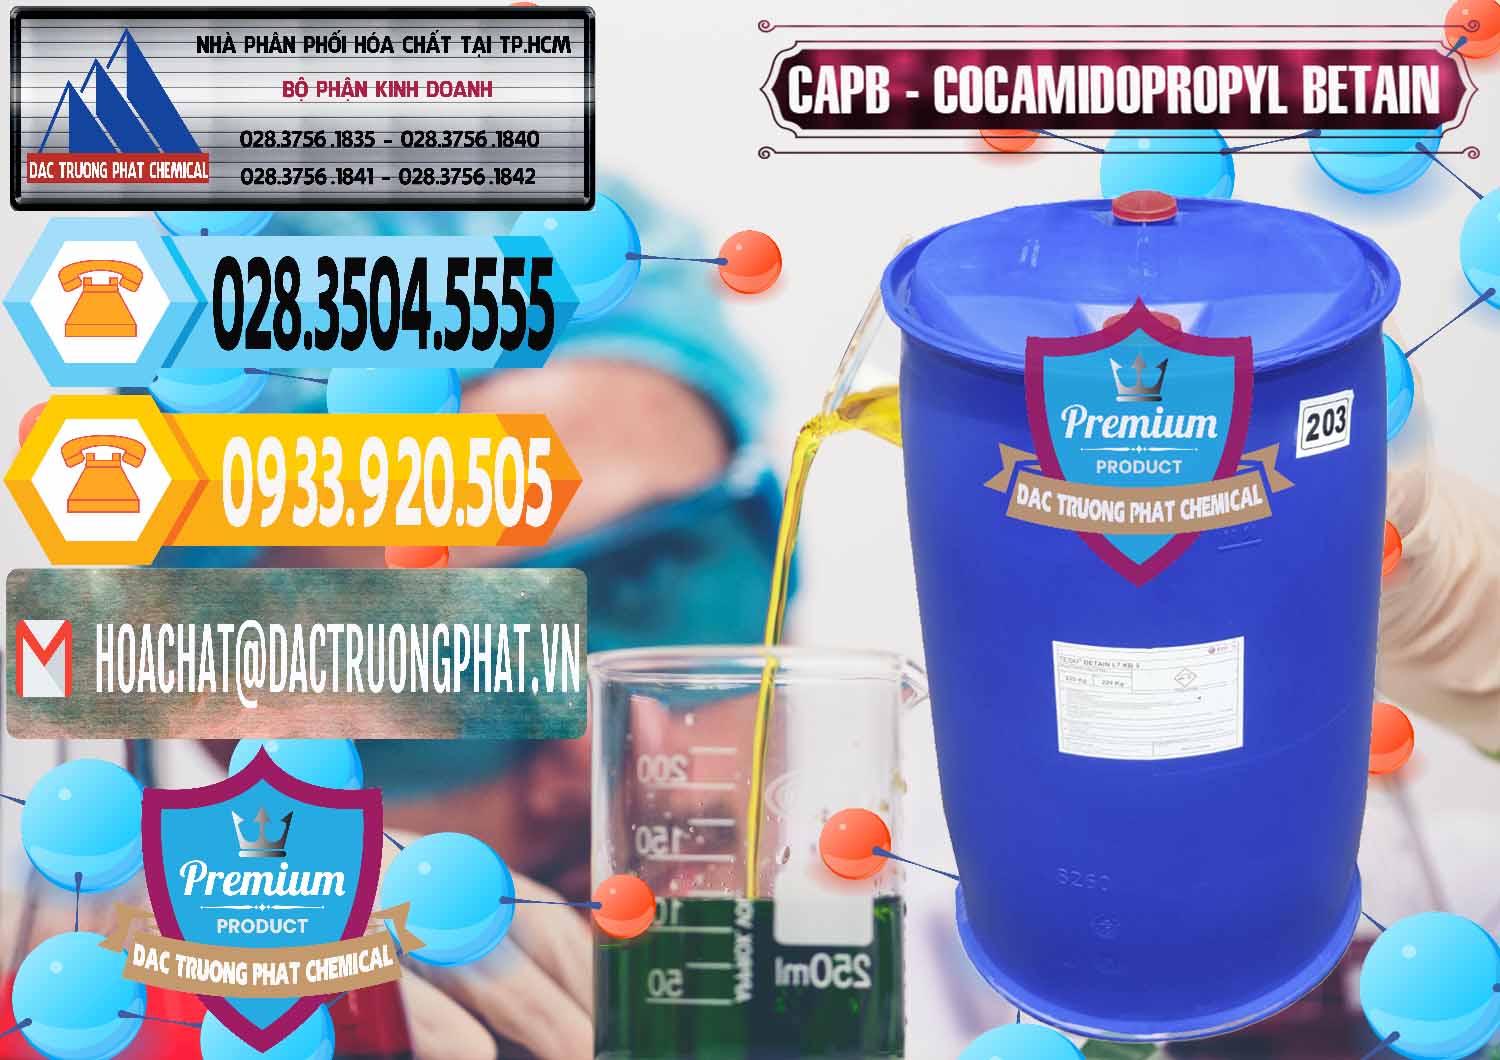 Chuyên bán - cung cấp Cocamidopropyl Betaine - CAPB Tego Indonesia - 0327 - Cty cung cấp và bán hóa chất tại TP.HCM - hoachattayrua.net